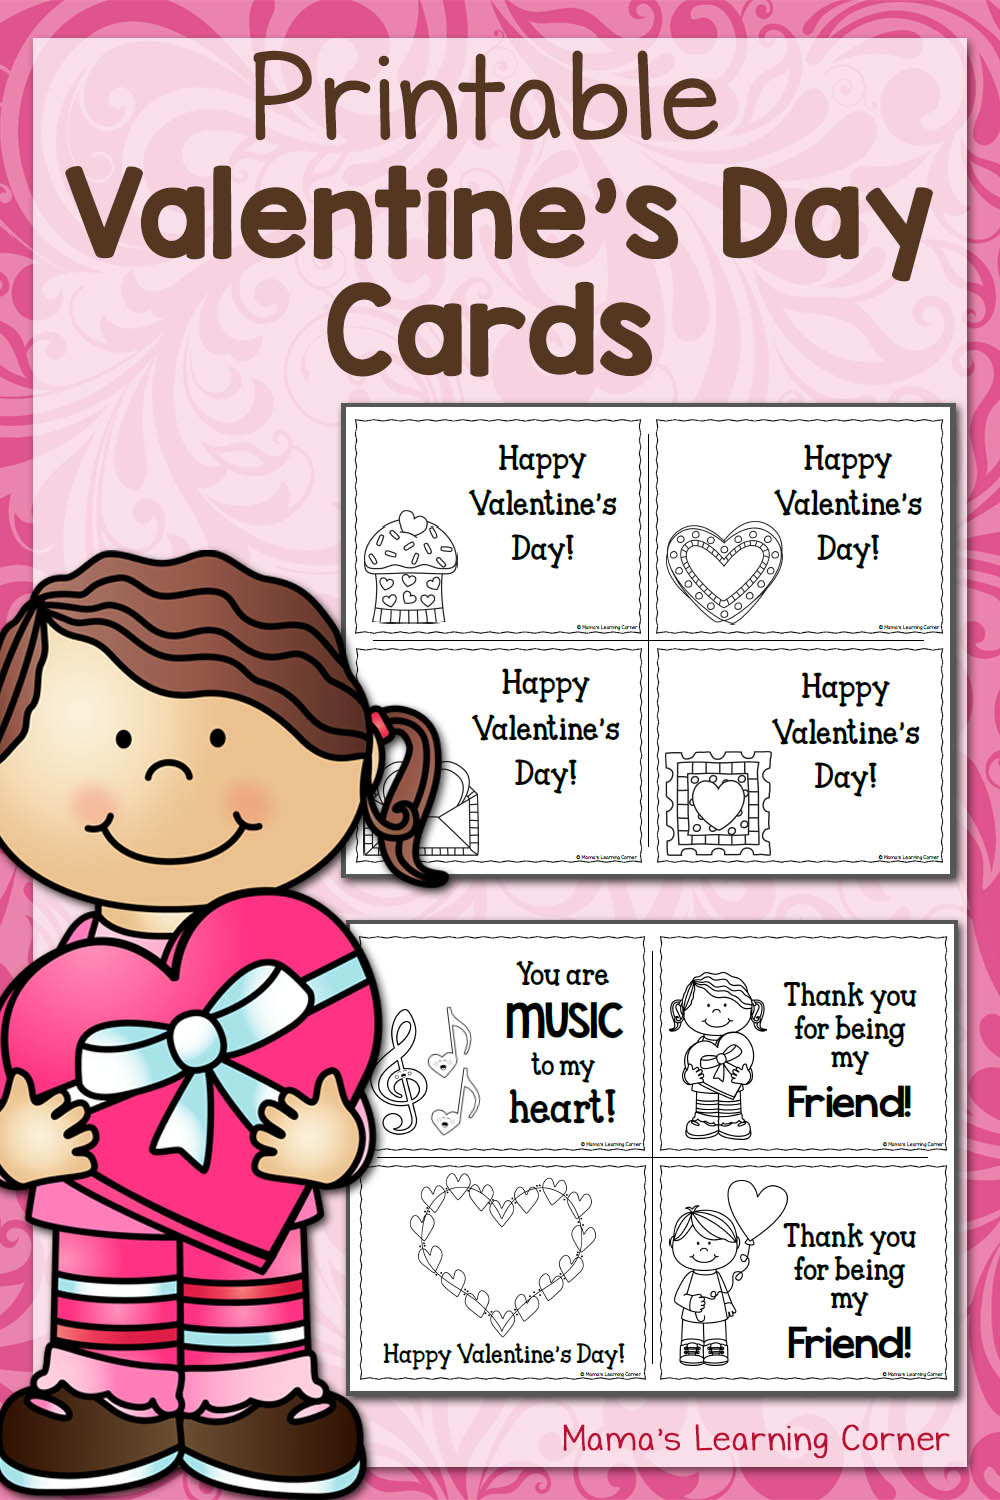 Valentine Worksheets For Kindergarten And First Grade 